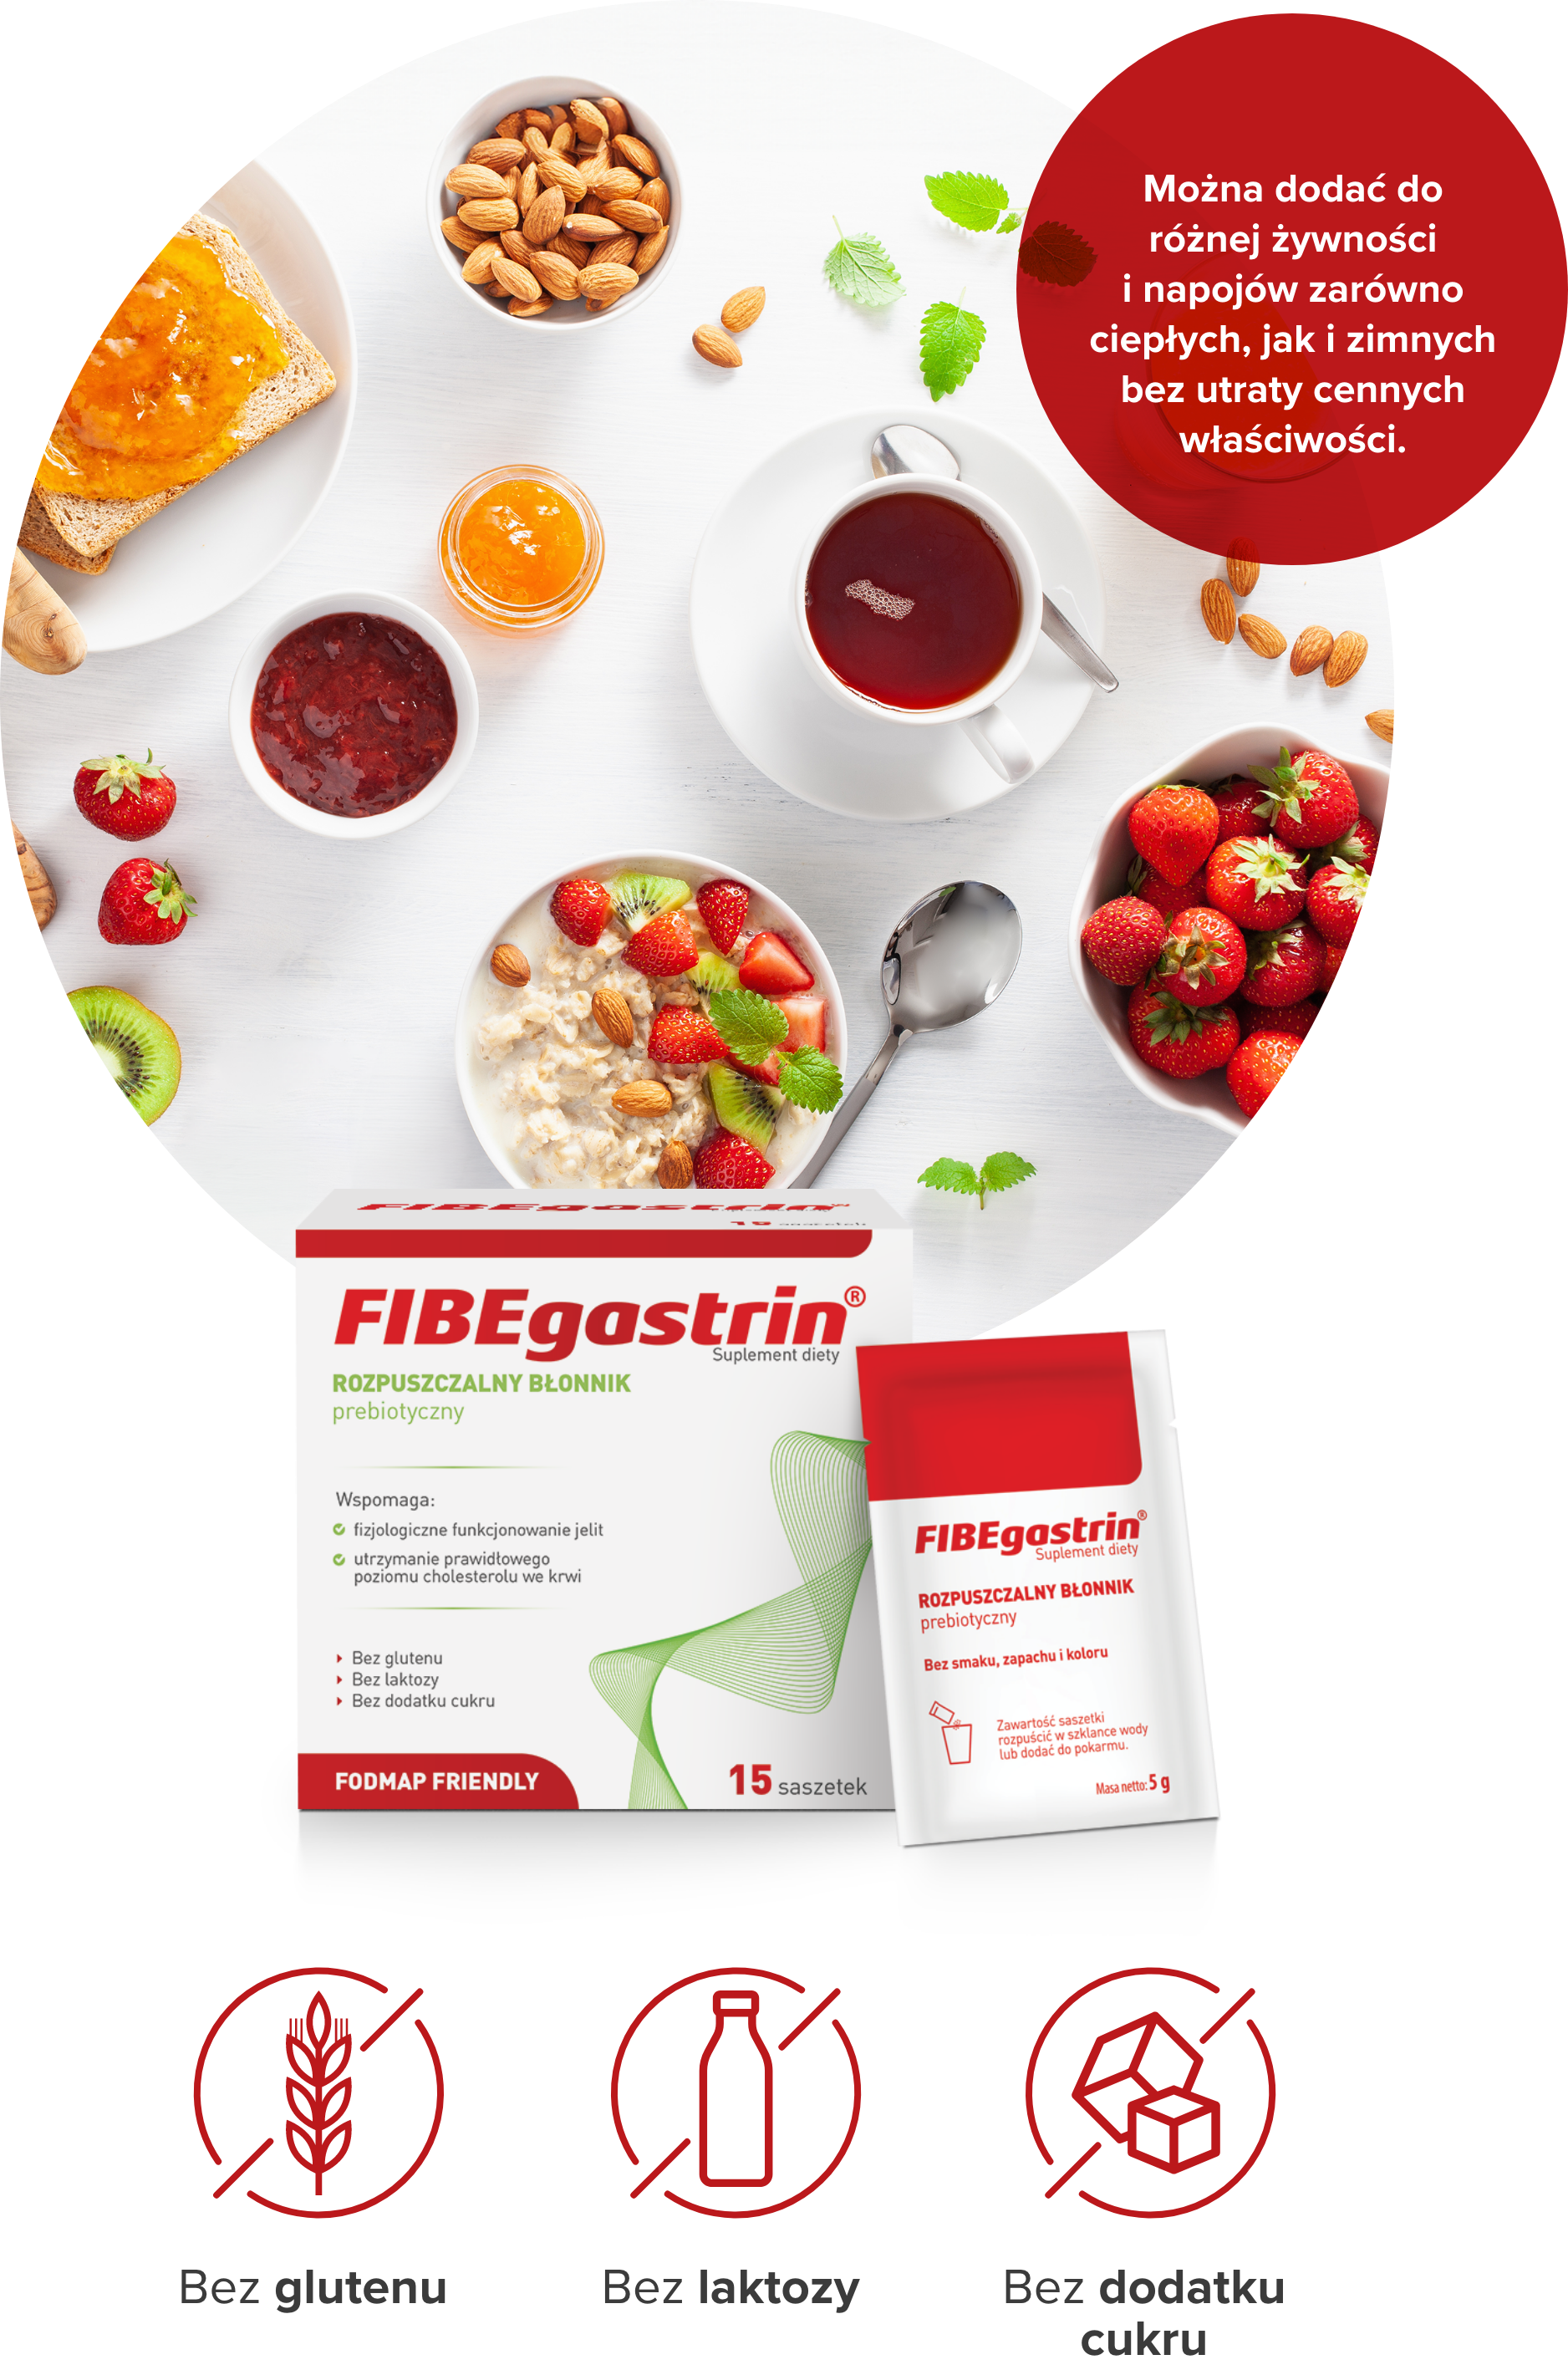 jedzenie; opakowanie fibegastrin; opis: Można dodać do różnej żywności i napojów zarówno ciepłych, jak i zimnych bez utraty cennych właściwości.